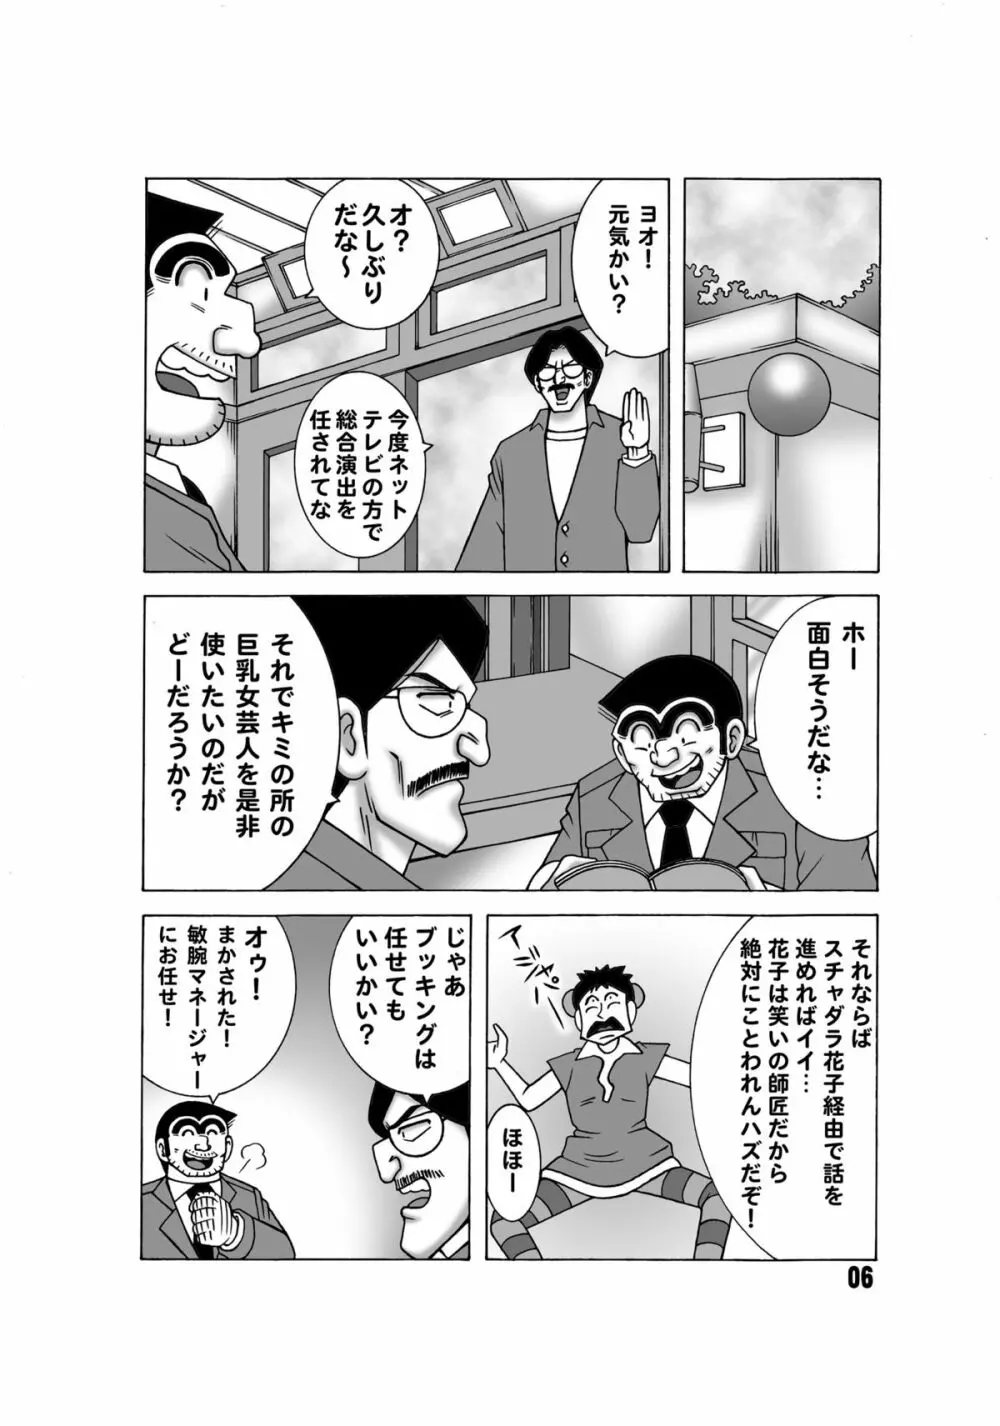 こち亀ダイナマイト 13 - page5